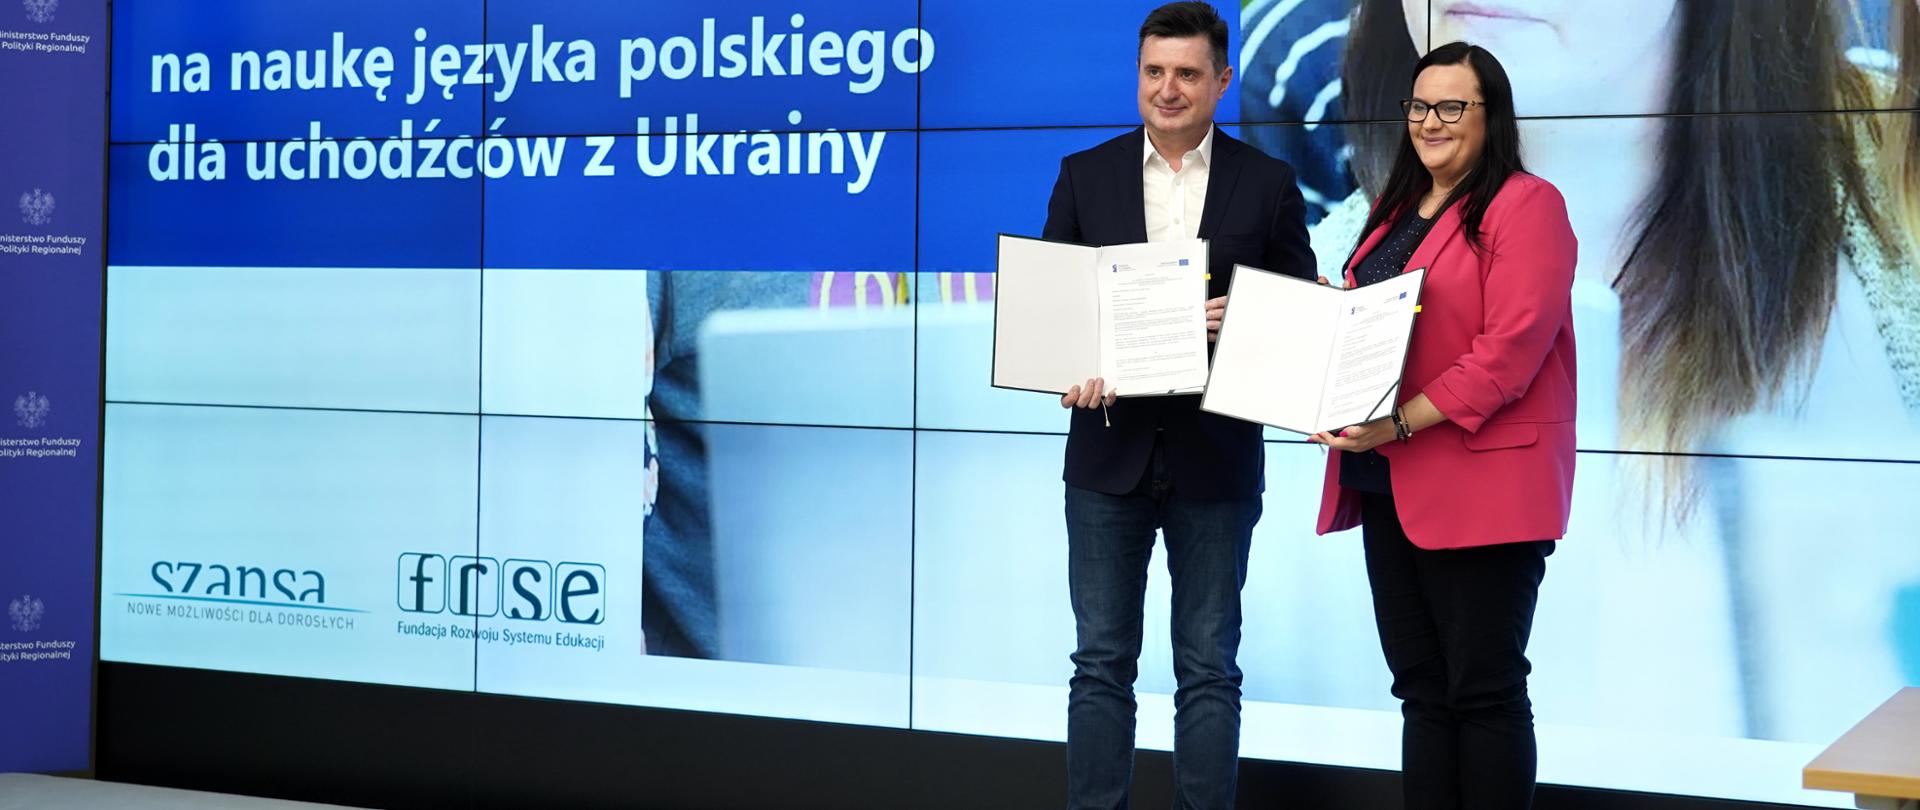 W sali konferencyjnej wiceminister Małgorzata Jarosińska-Jedynak i dyrektor Paweł Poszytek pozują do zdjęcia z dokumentami. W rękach trzymają dokumenty.